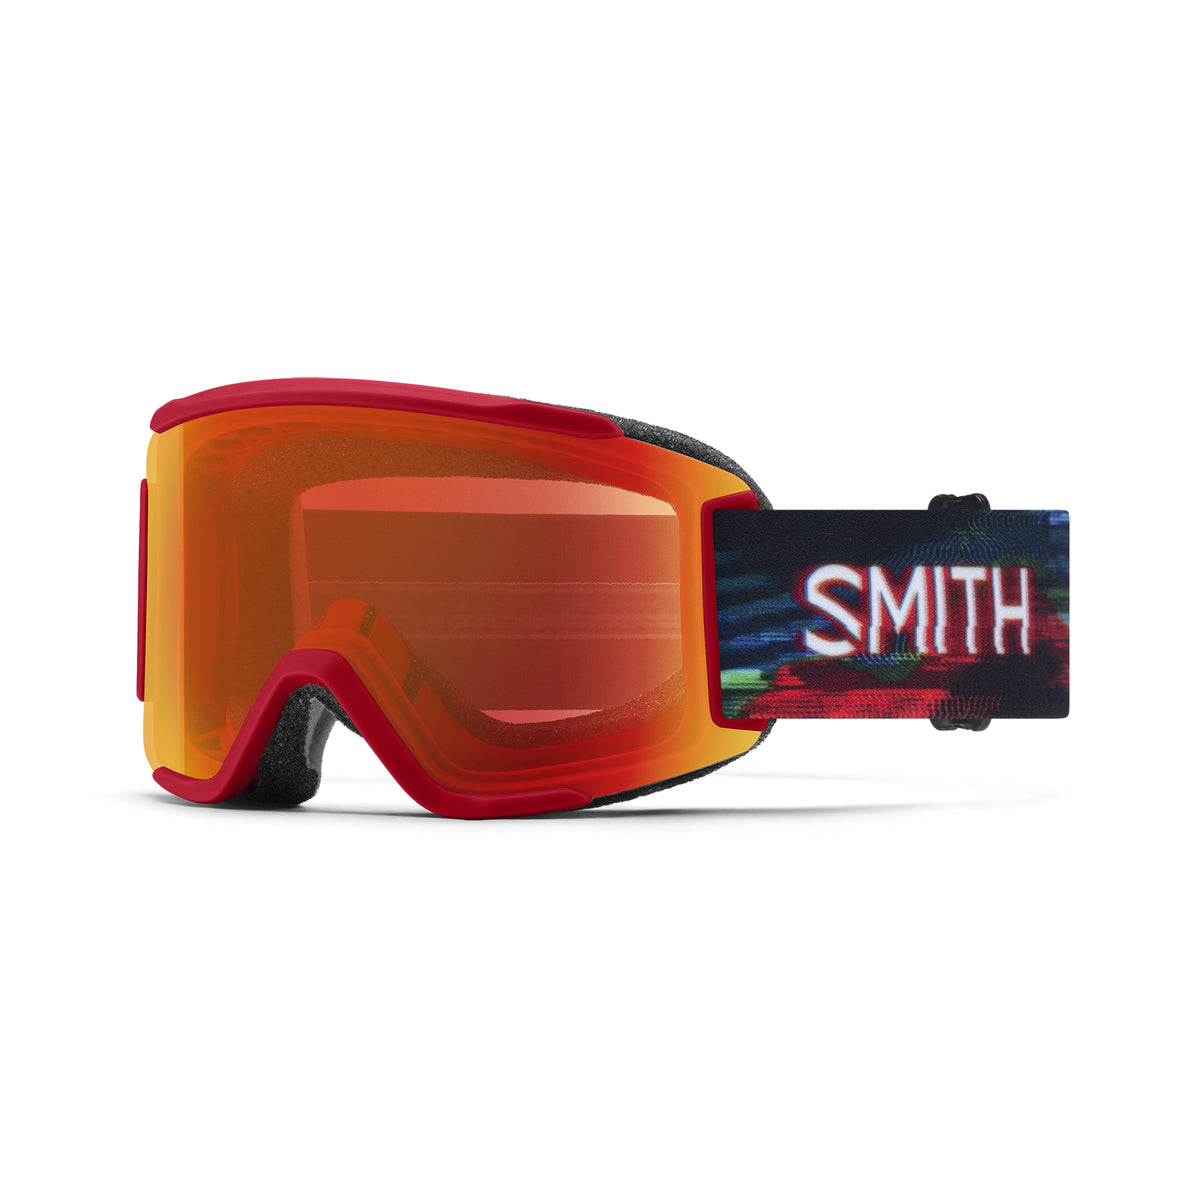 Smith SQUAD S Snow Goggles